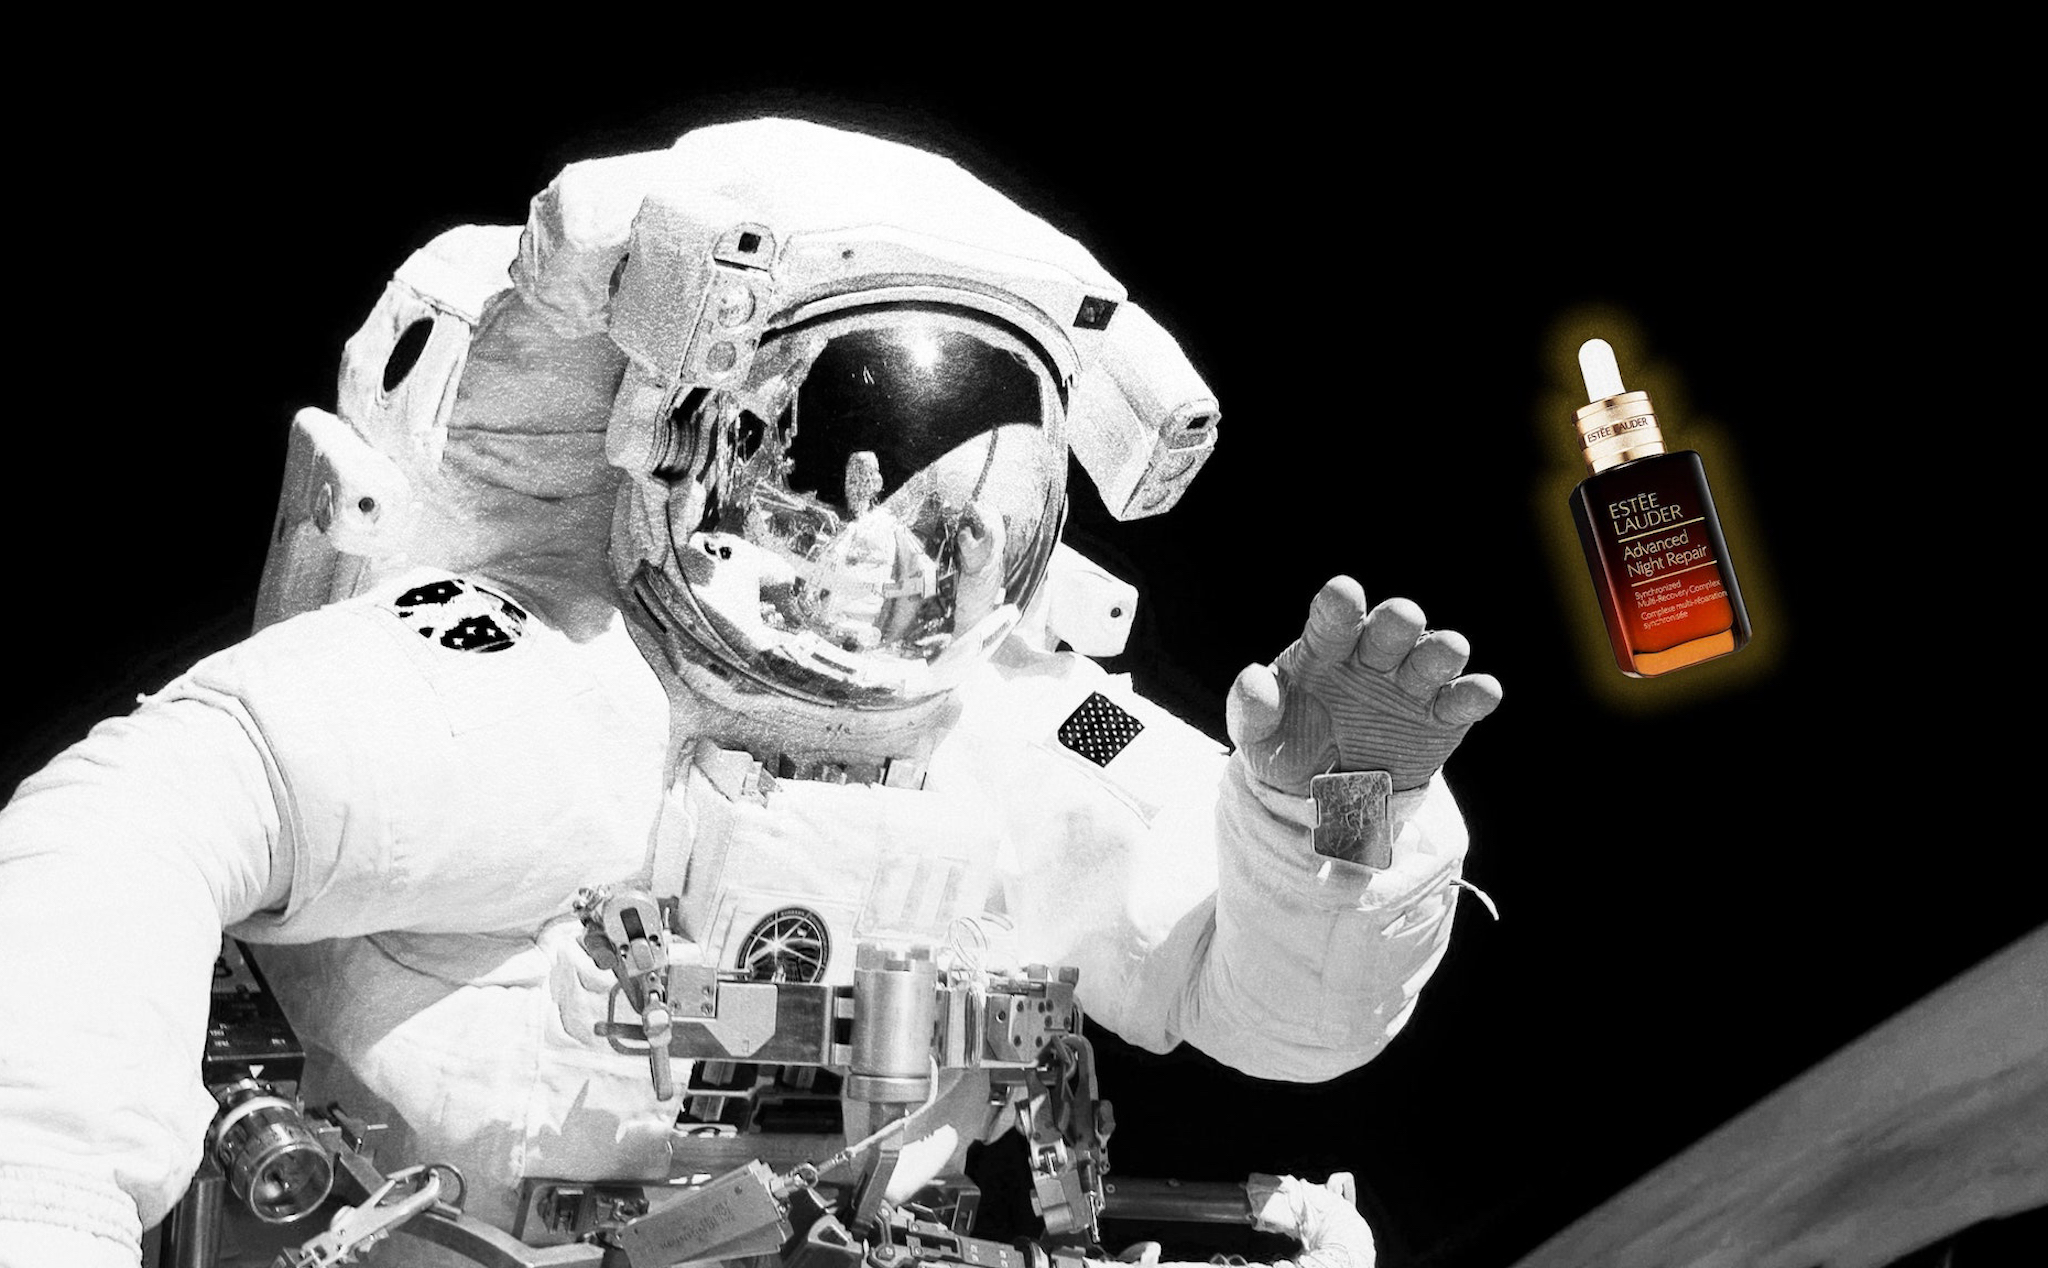 Hãng mỹ phẩm thuê NASA đưa sản phẩm ra không gian quảng cáo